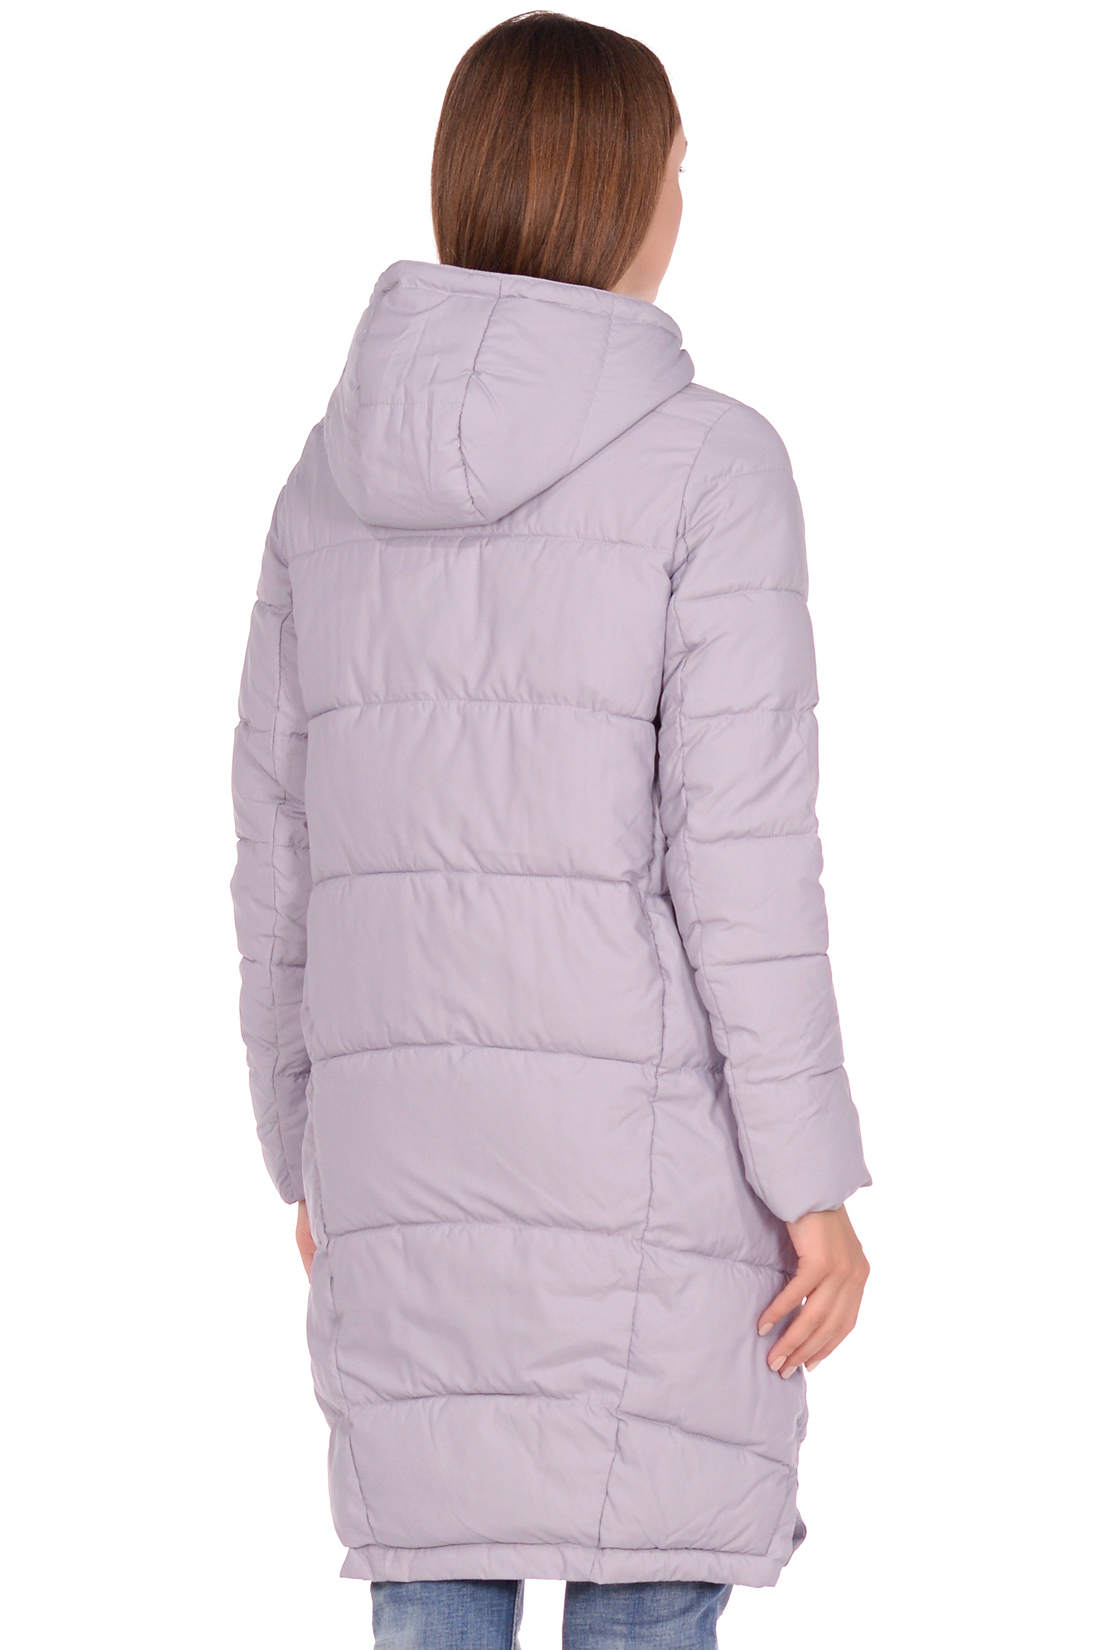 Куртка-кокон с накладными карманами (арт. baon B038582), размер XXL, цвет сиреневый Куртка-кокон с накладными карманами (арт. baon B038582) - фото 2